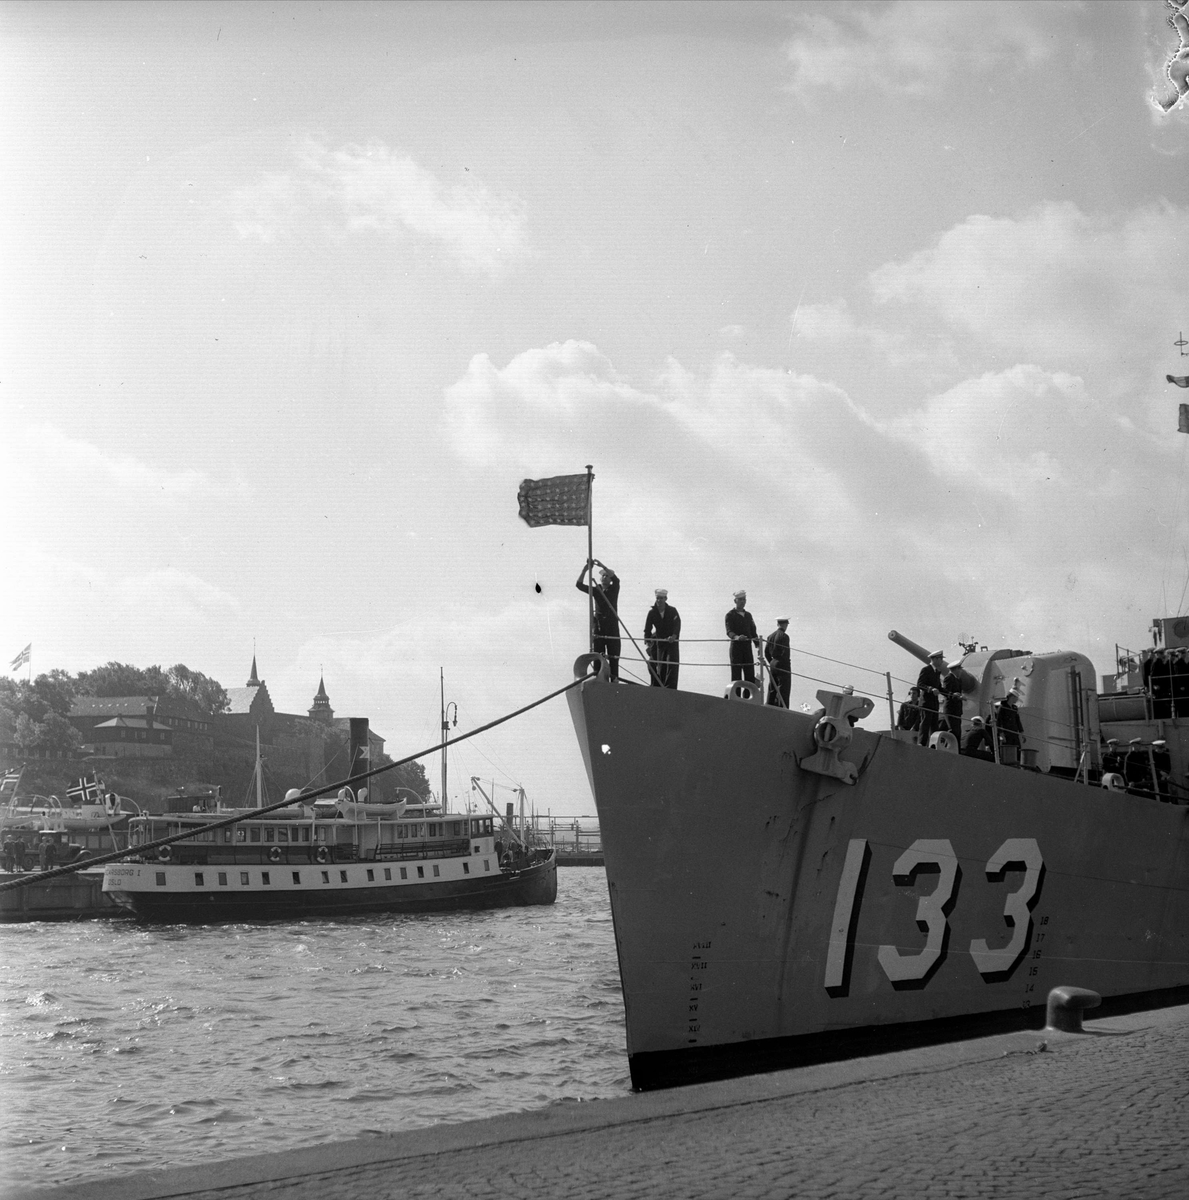 "Missouri" Amerikansk krigsskip ved brygge. Oslo 18.06.1951.